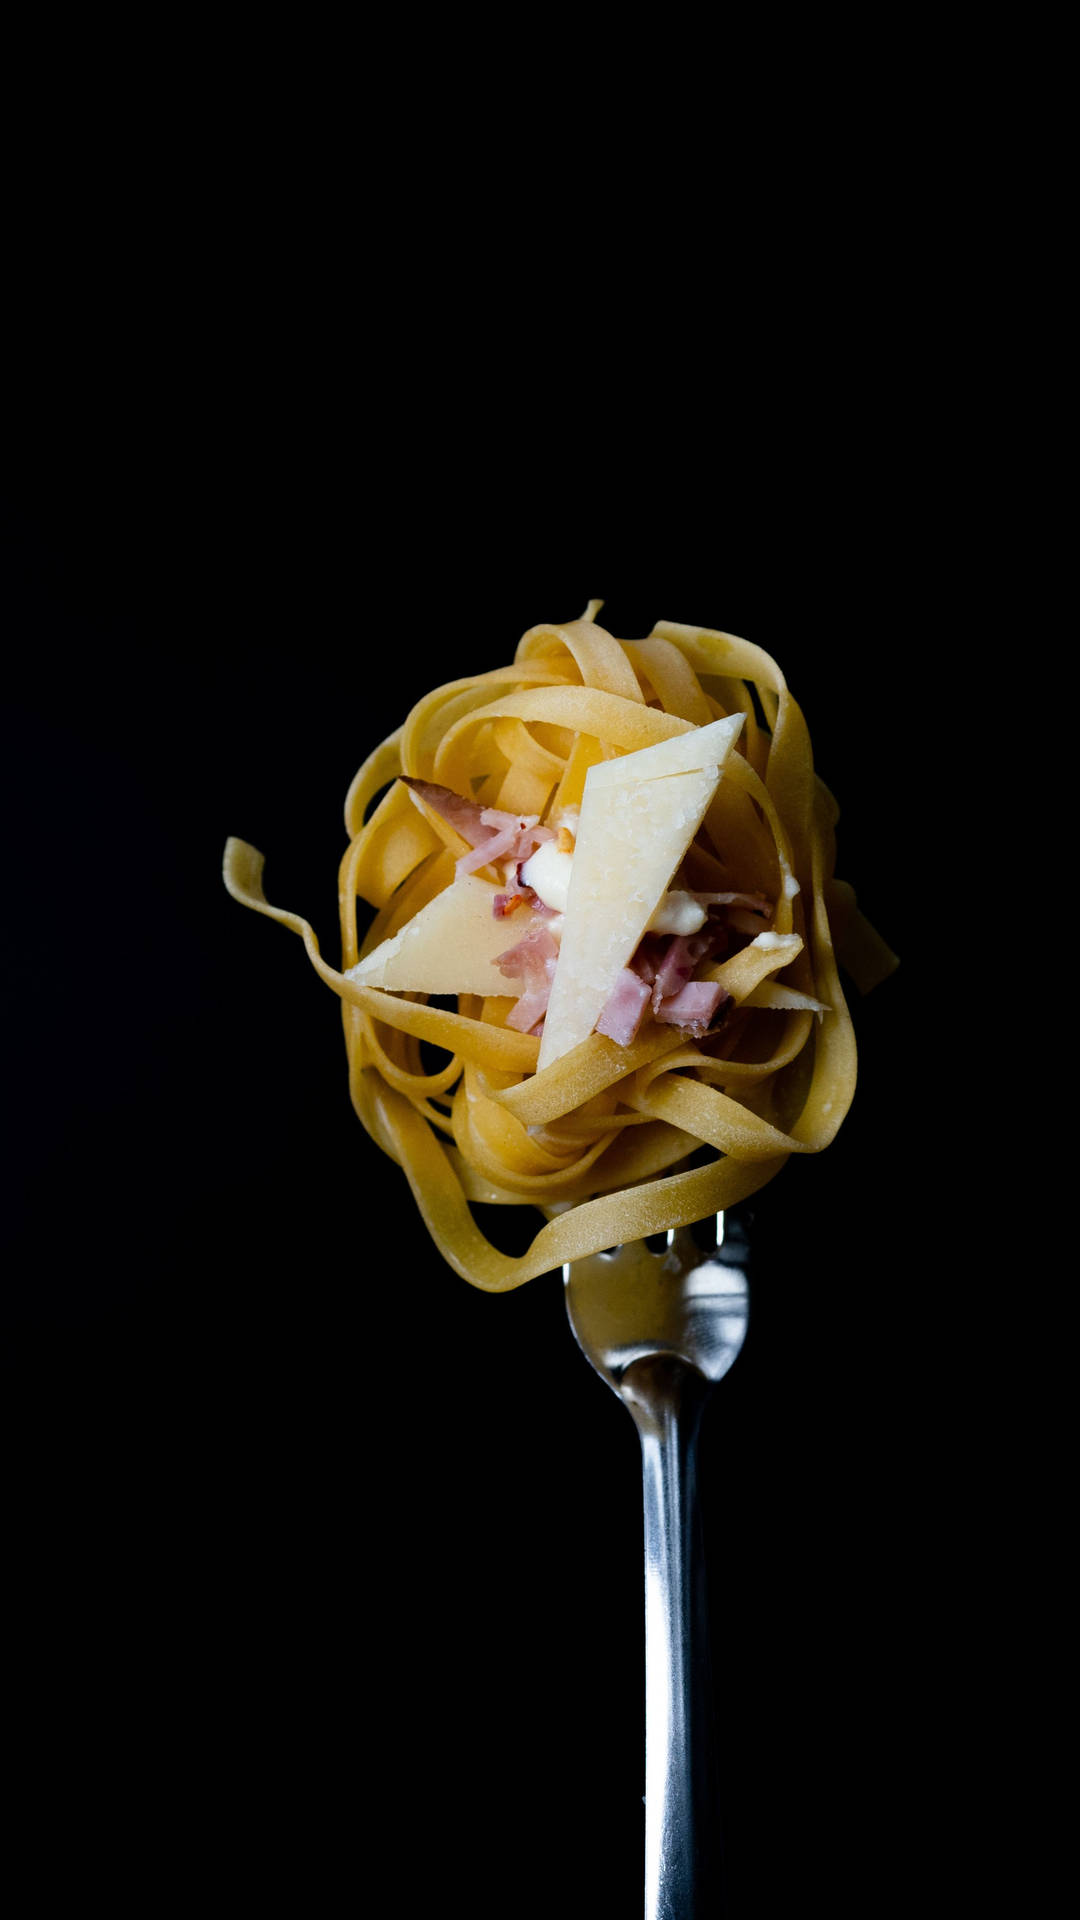 En gaffel med pasta på den Wallpaper